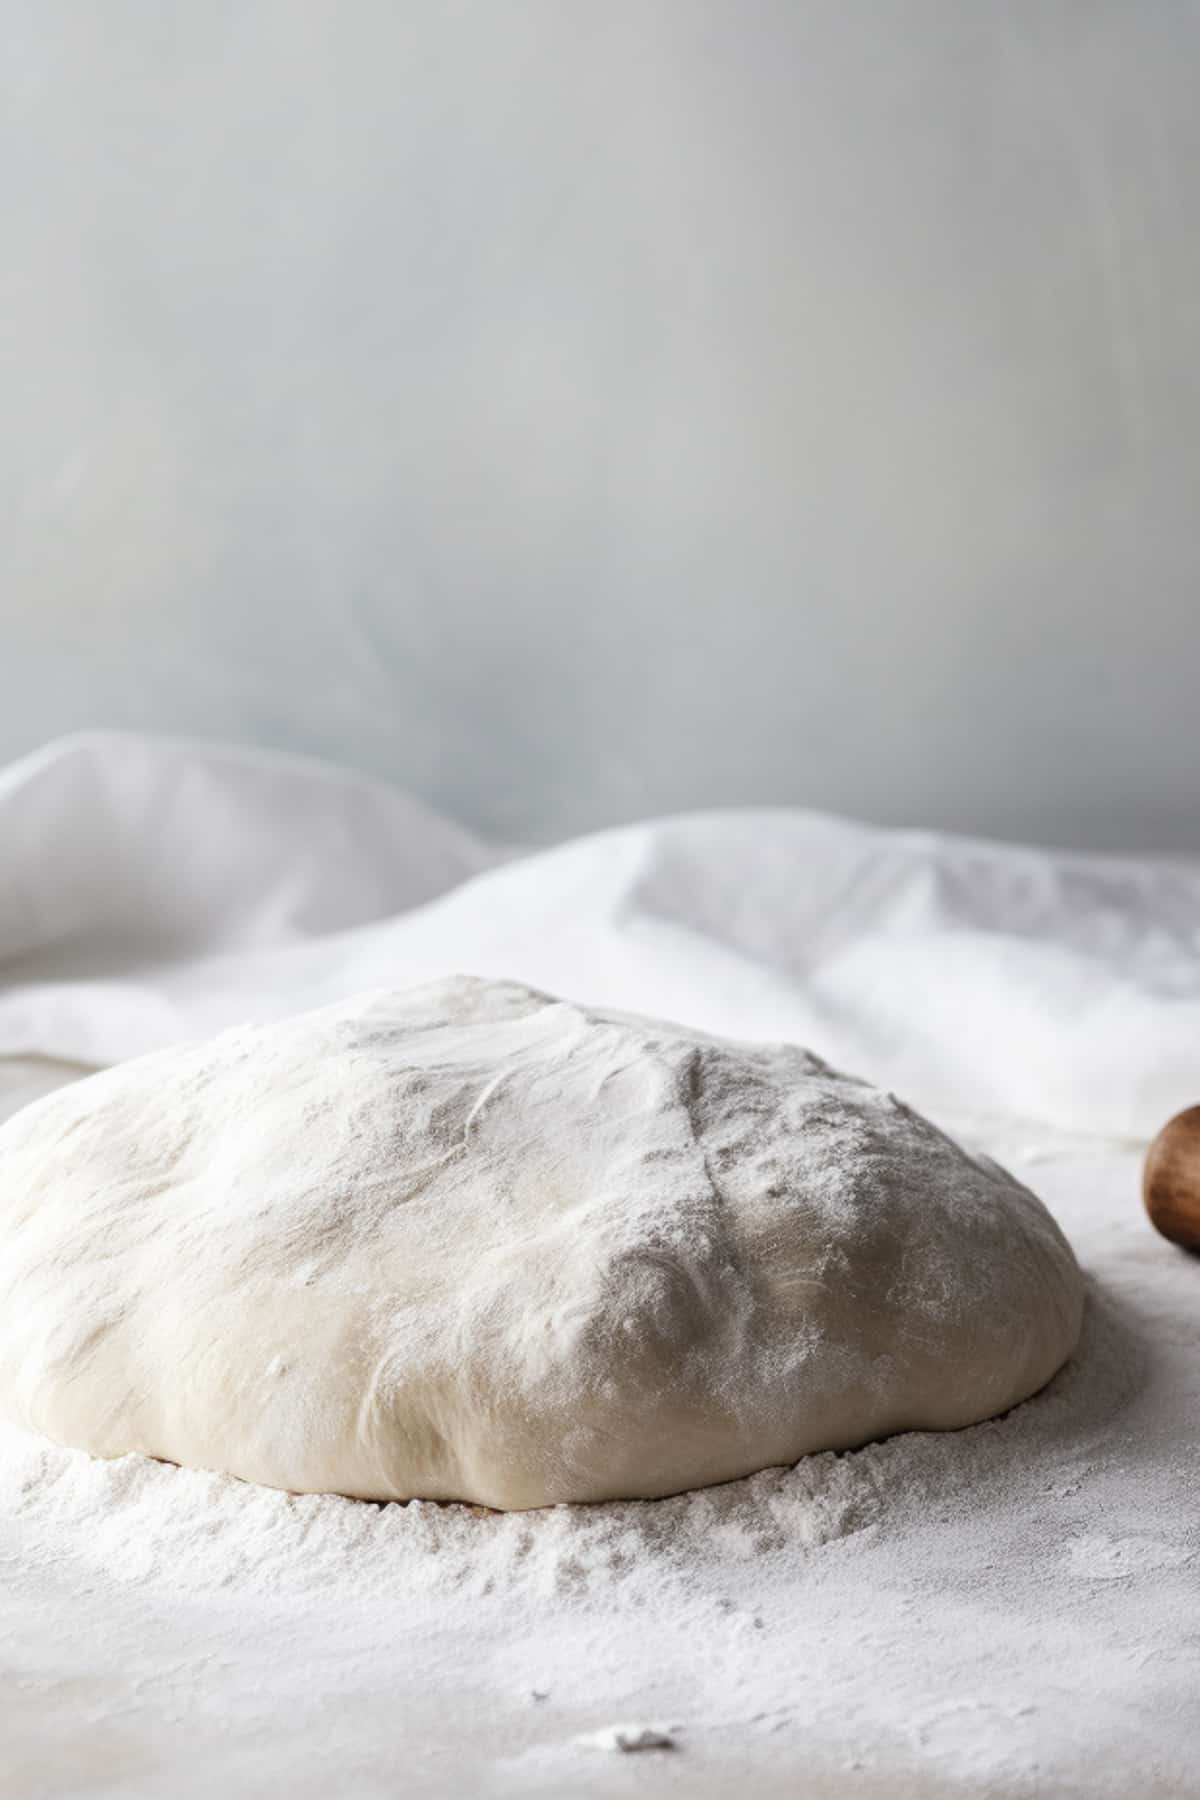 Dough for garlic naan bread on a floured surface.